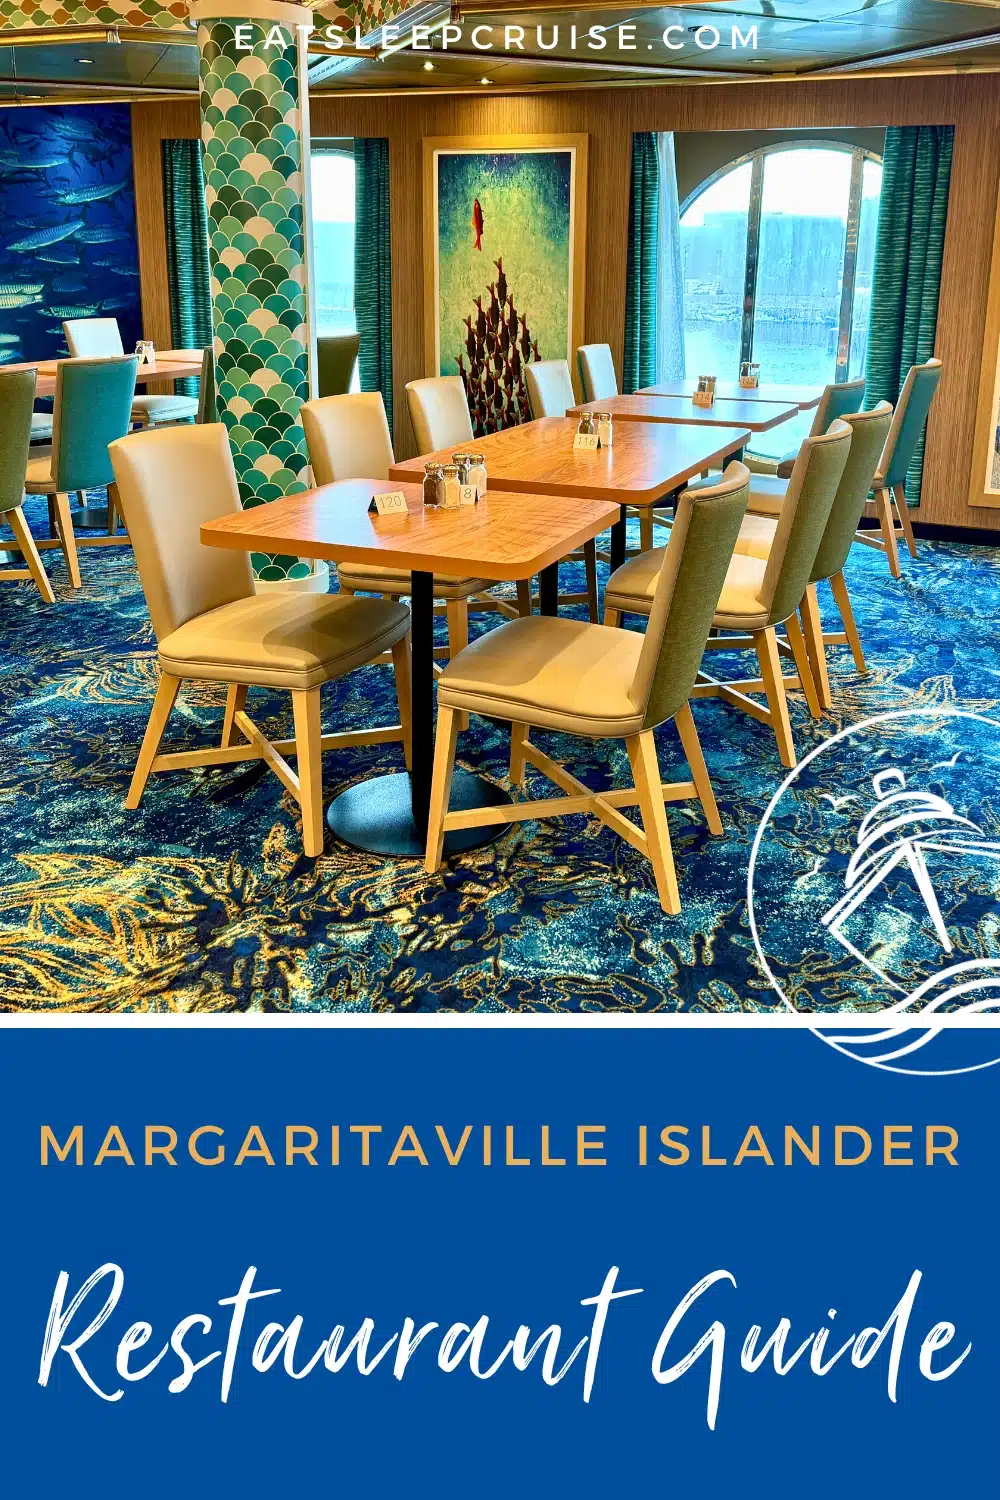 Margaritaville at Sea Islander restaurants